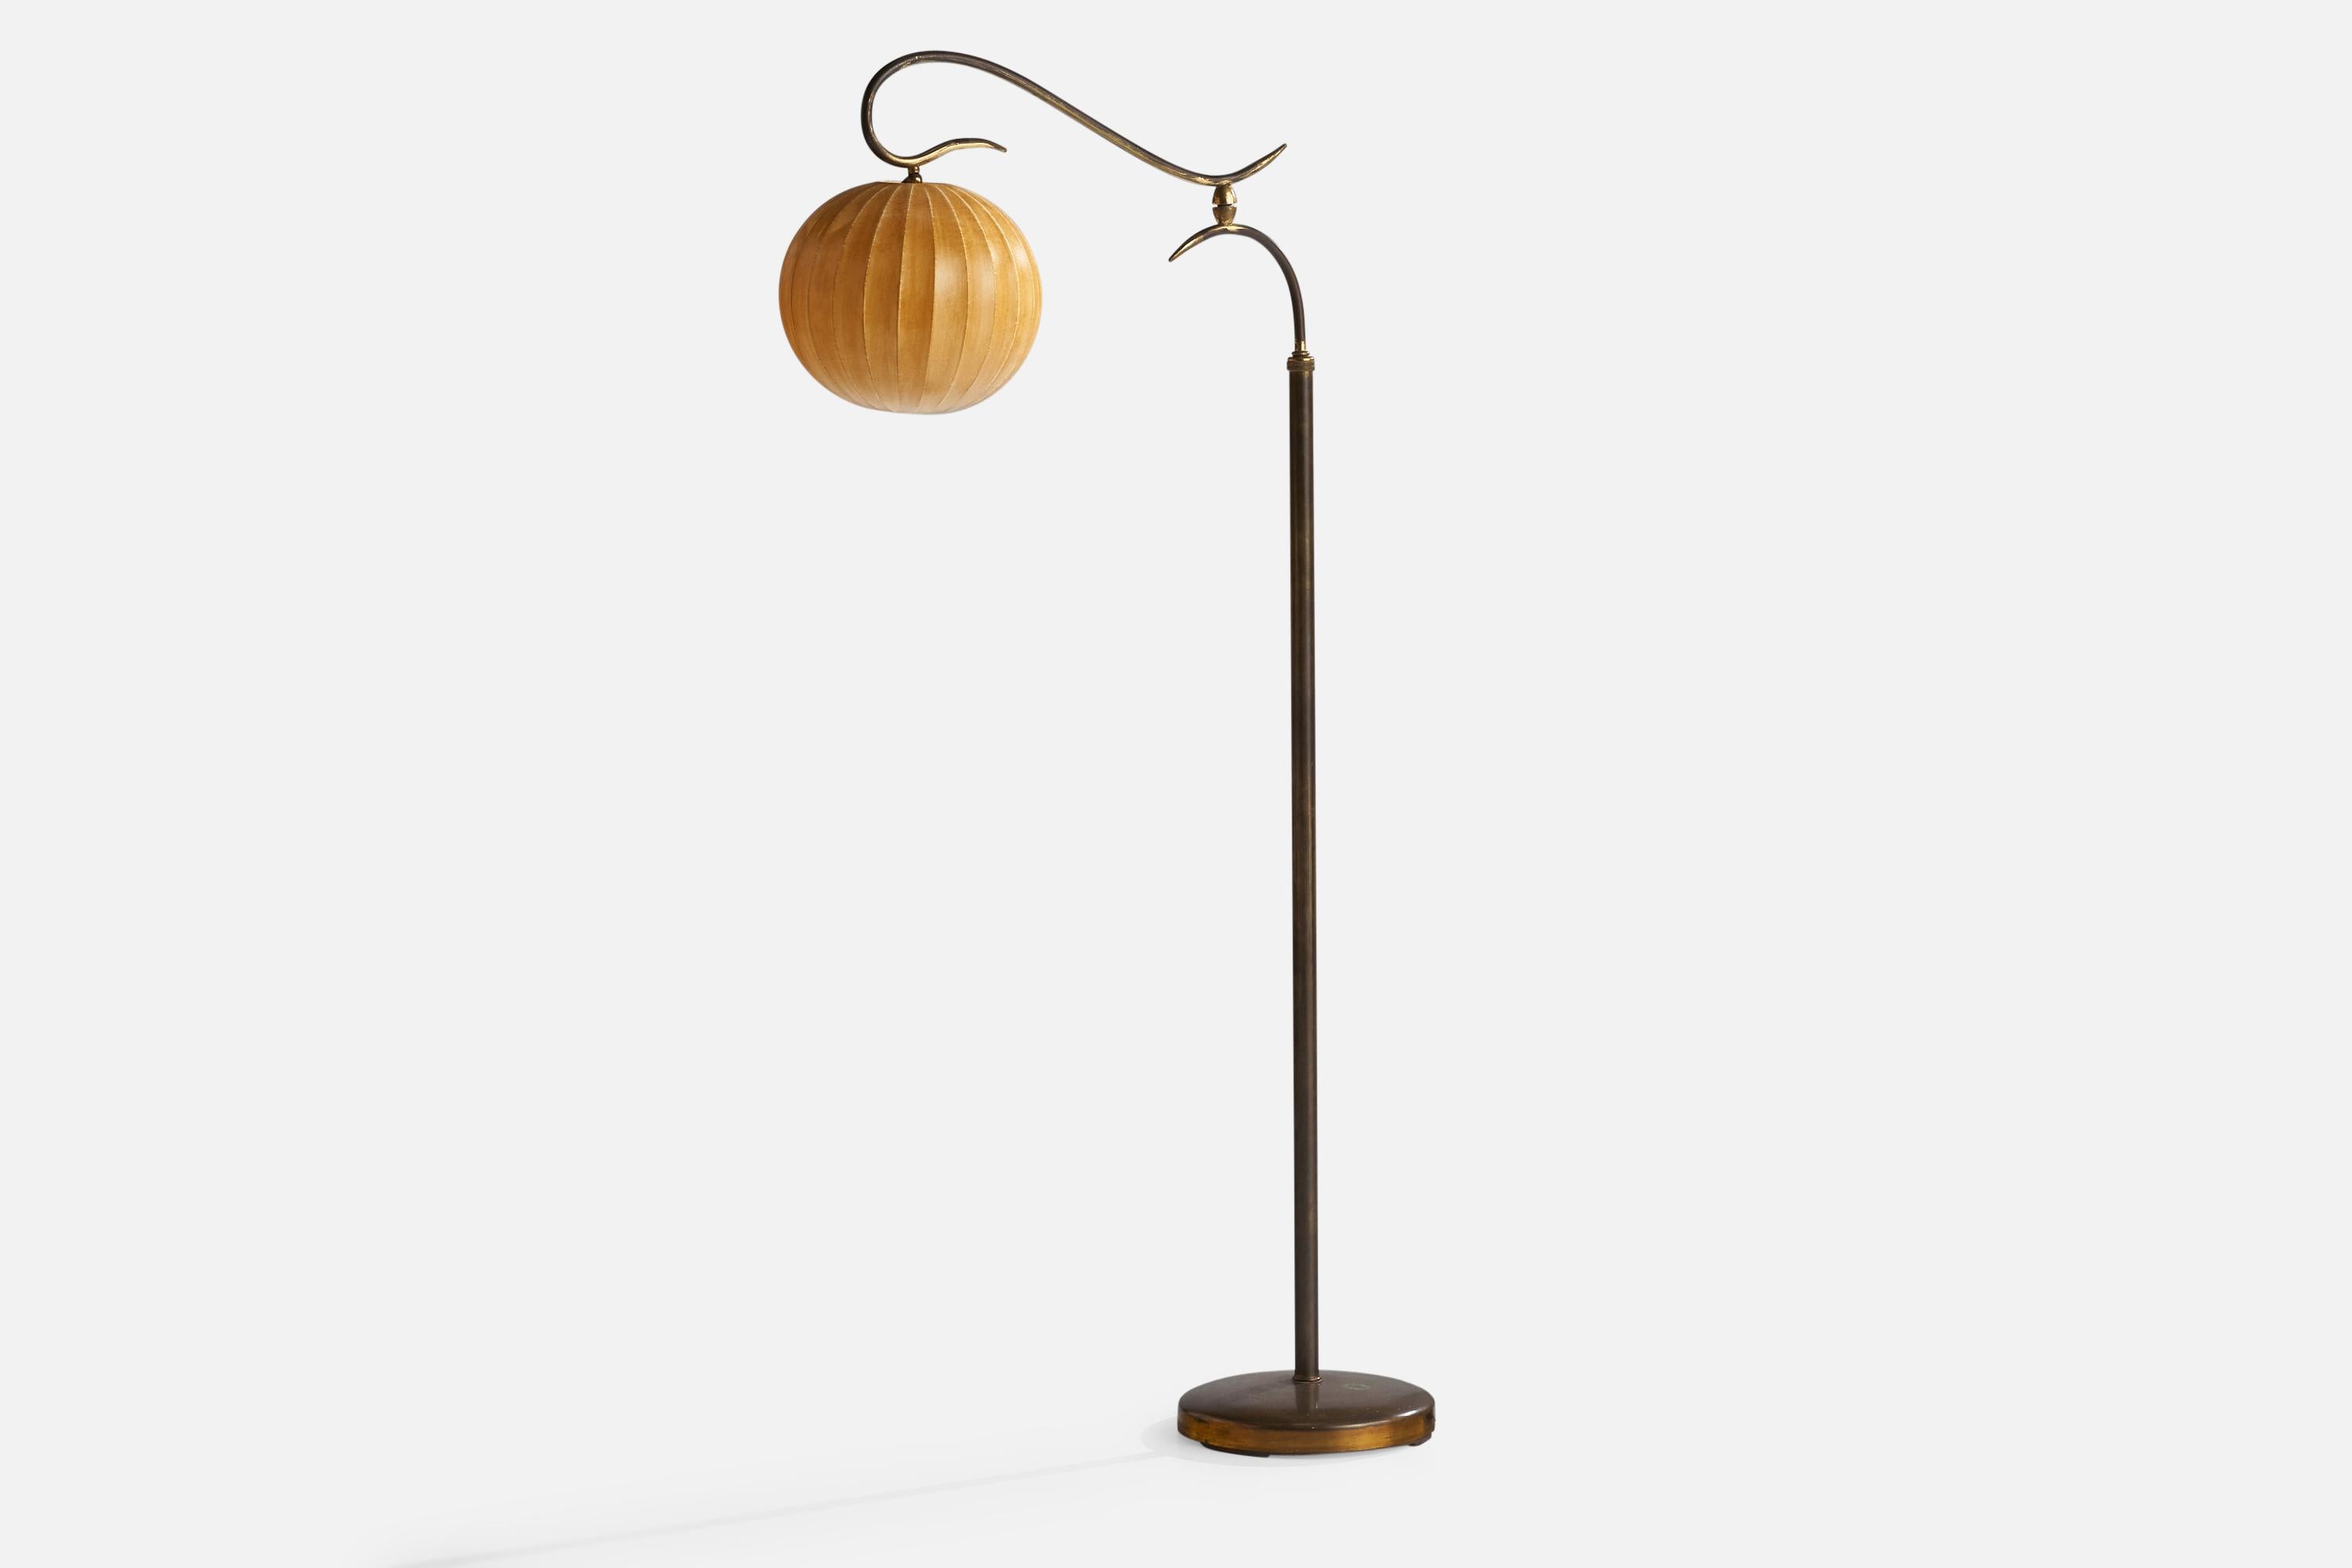 Eine verstellbare Stehlampe aus Messing und gewachster Baumwolle, entworfen und hergestellt in Italien, 1930er Jahre.

Gesamtabmessungen (Zoll): 65